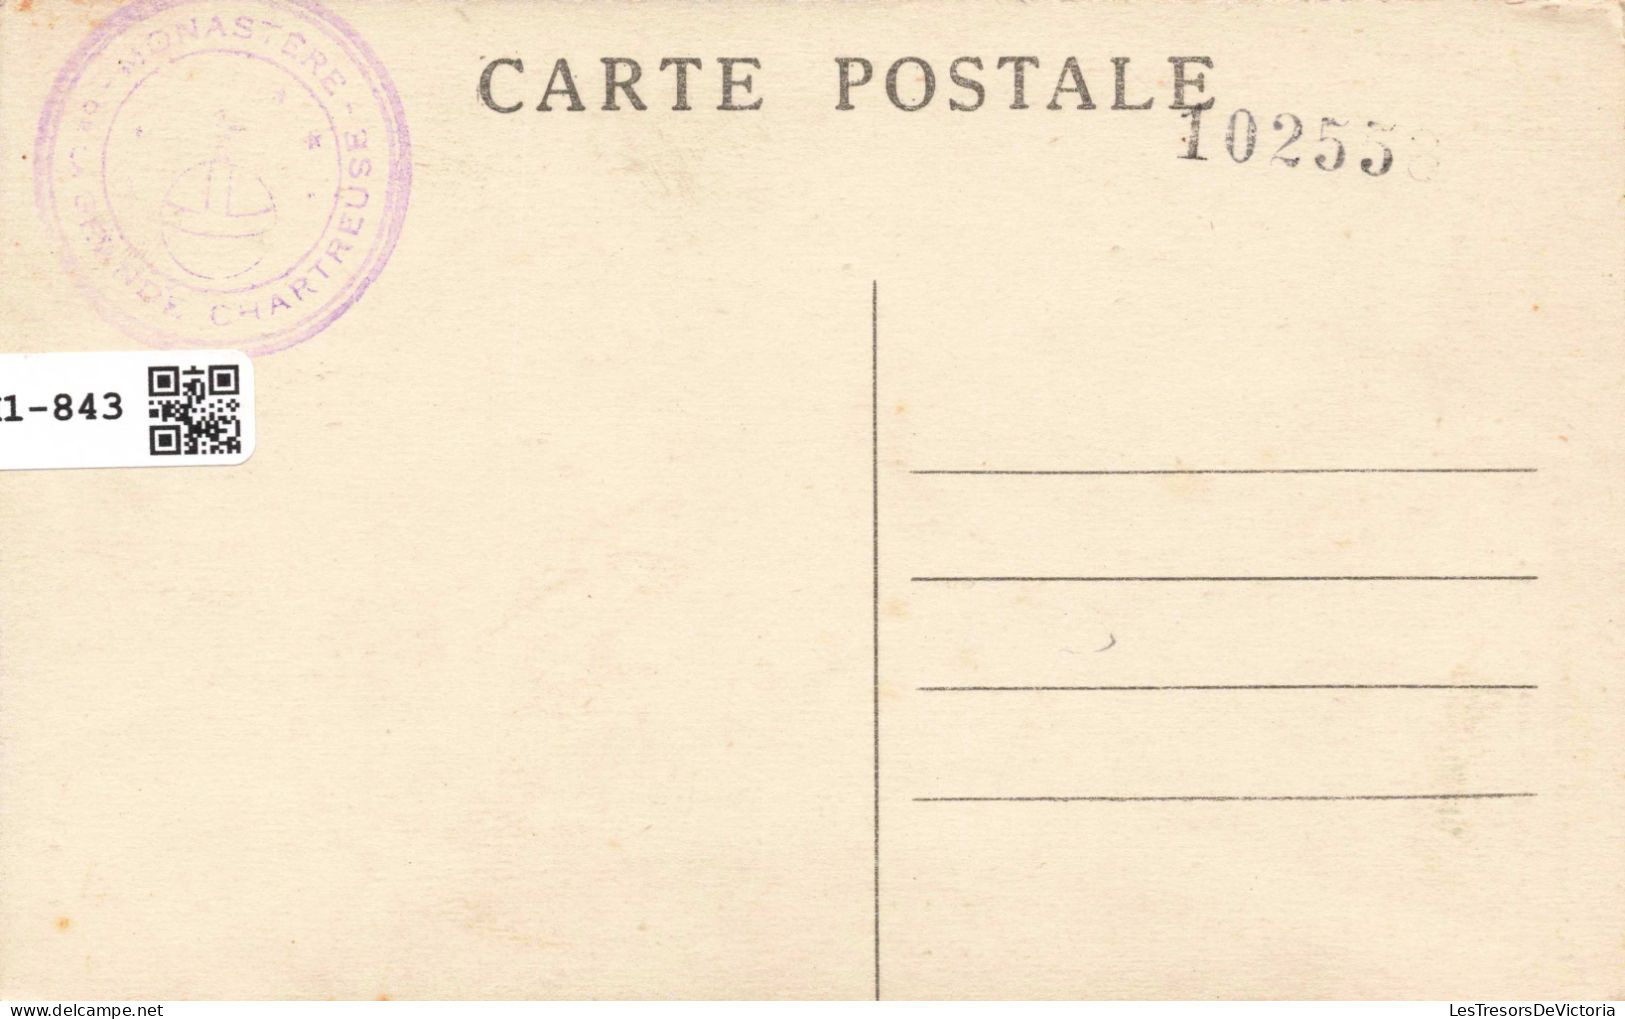 FRANCE Saint Pierre D'Entremont - Couvent De La Grande-Chartreuse - Chapelle Des étrangers - Carte Postale Ancienne - Saint-Pierre-d'Entremont